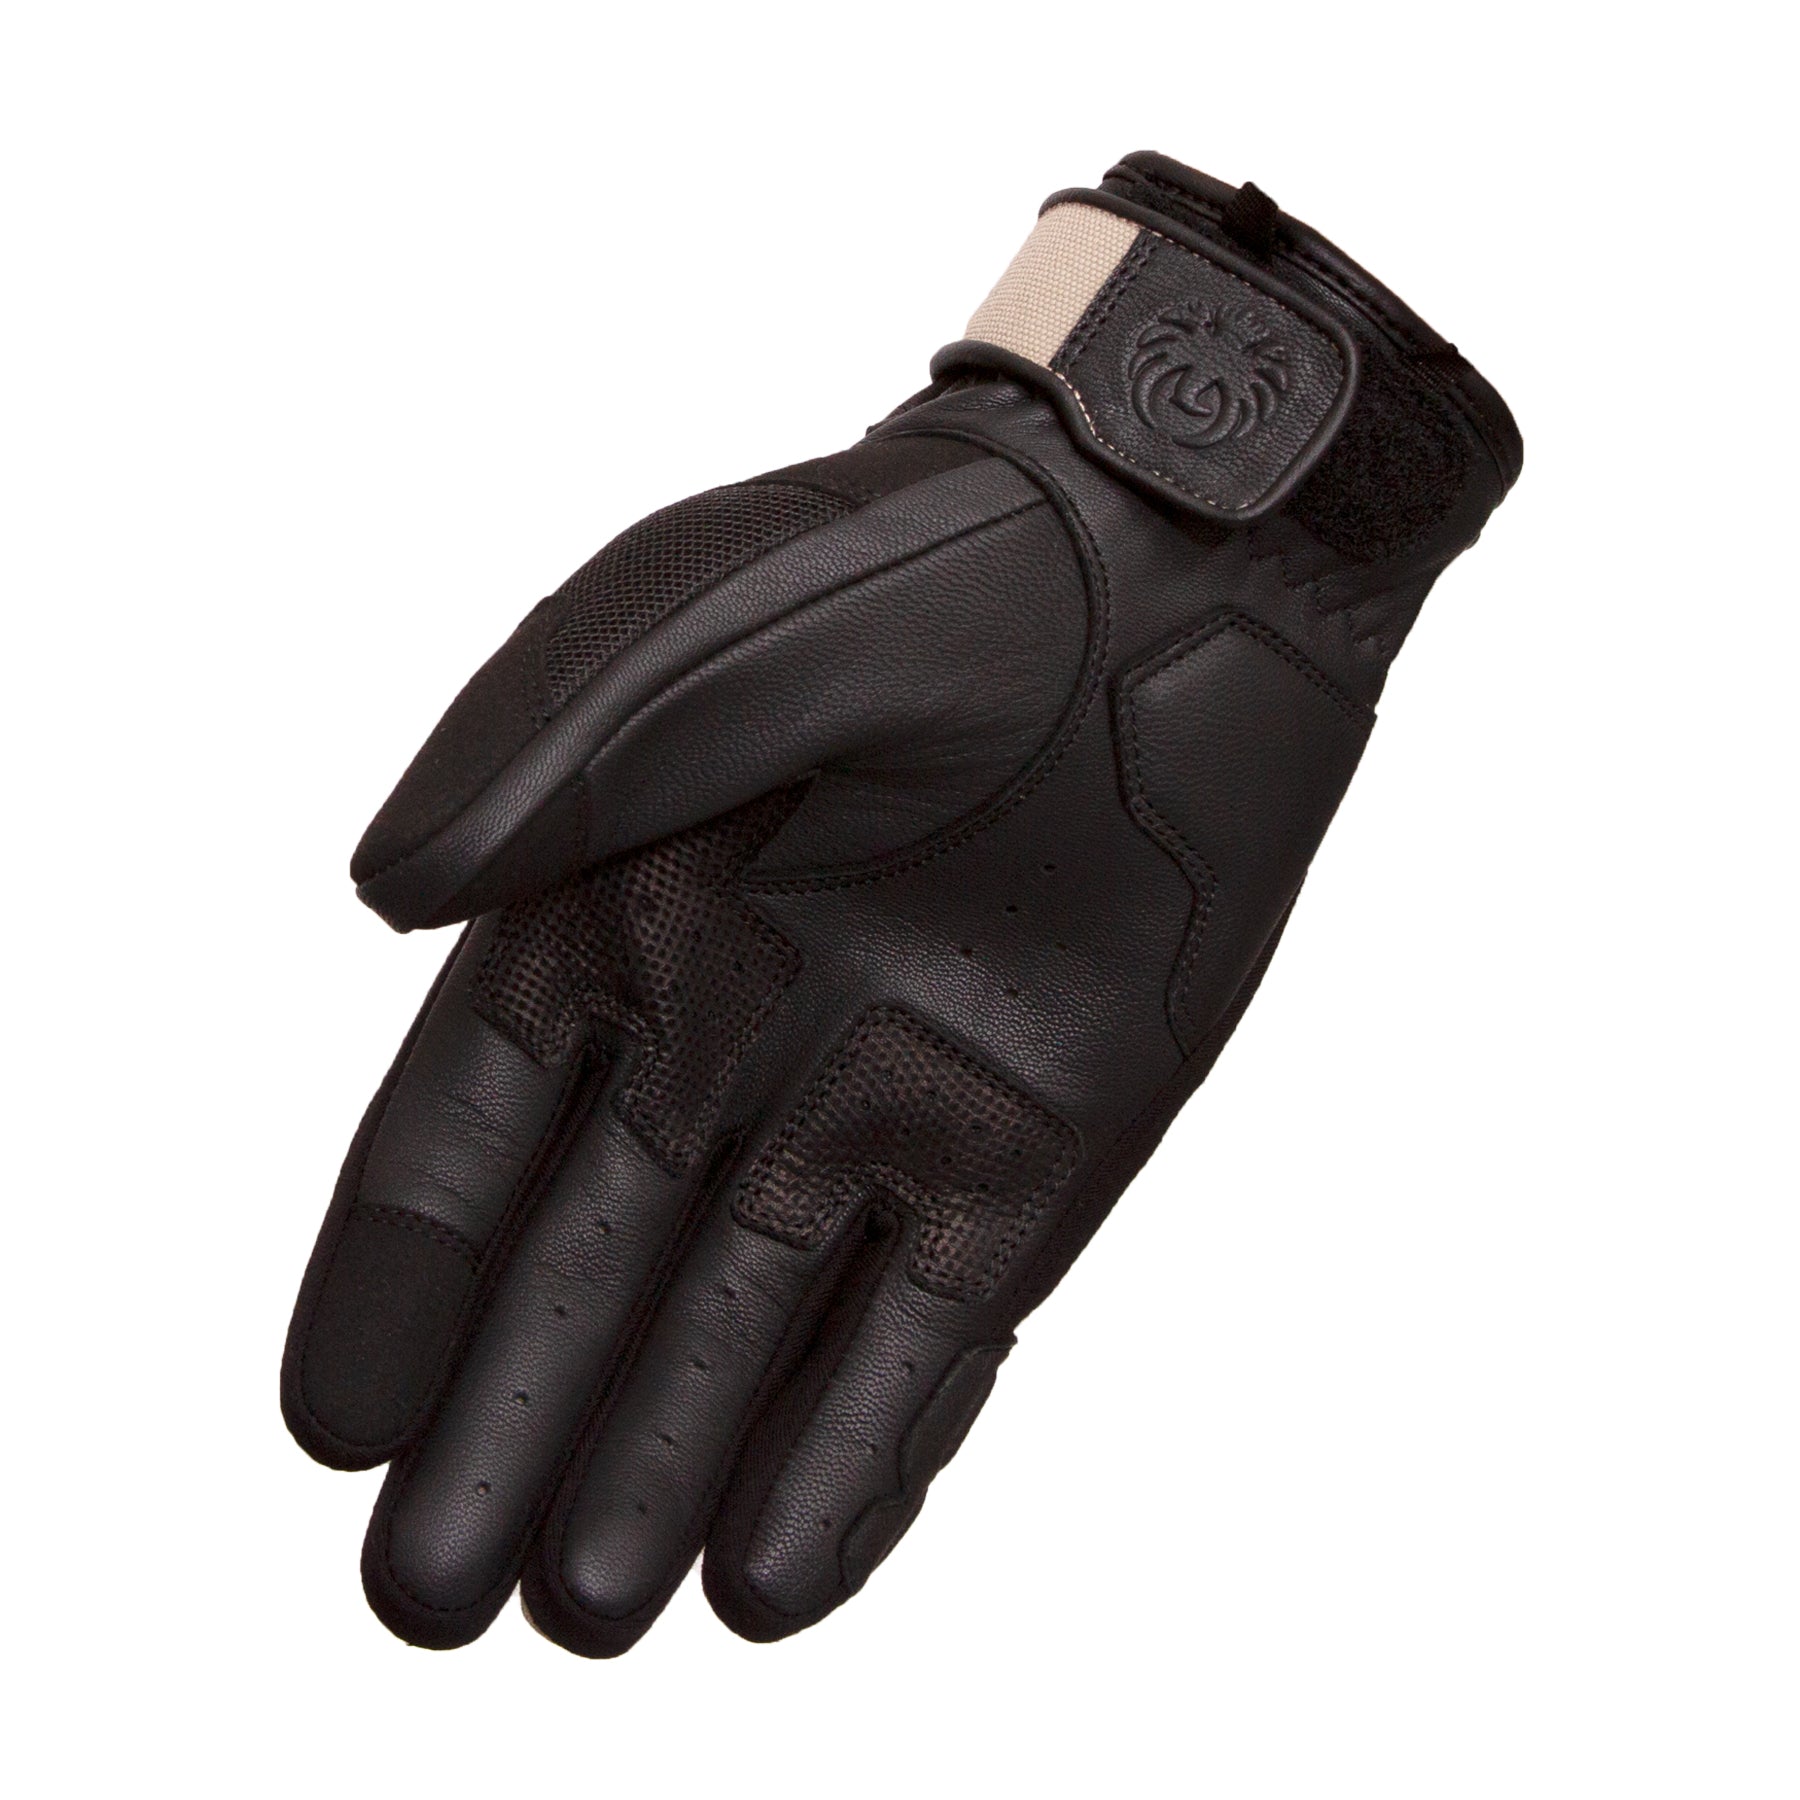 Kaplan Mesh Glove